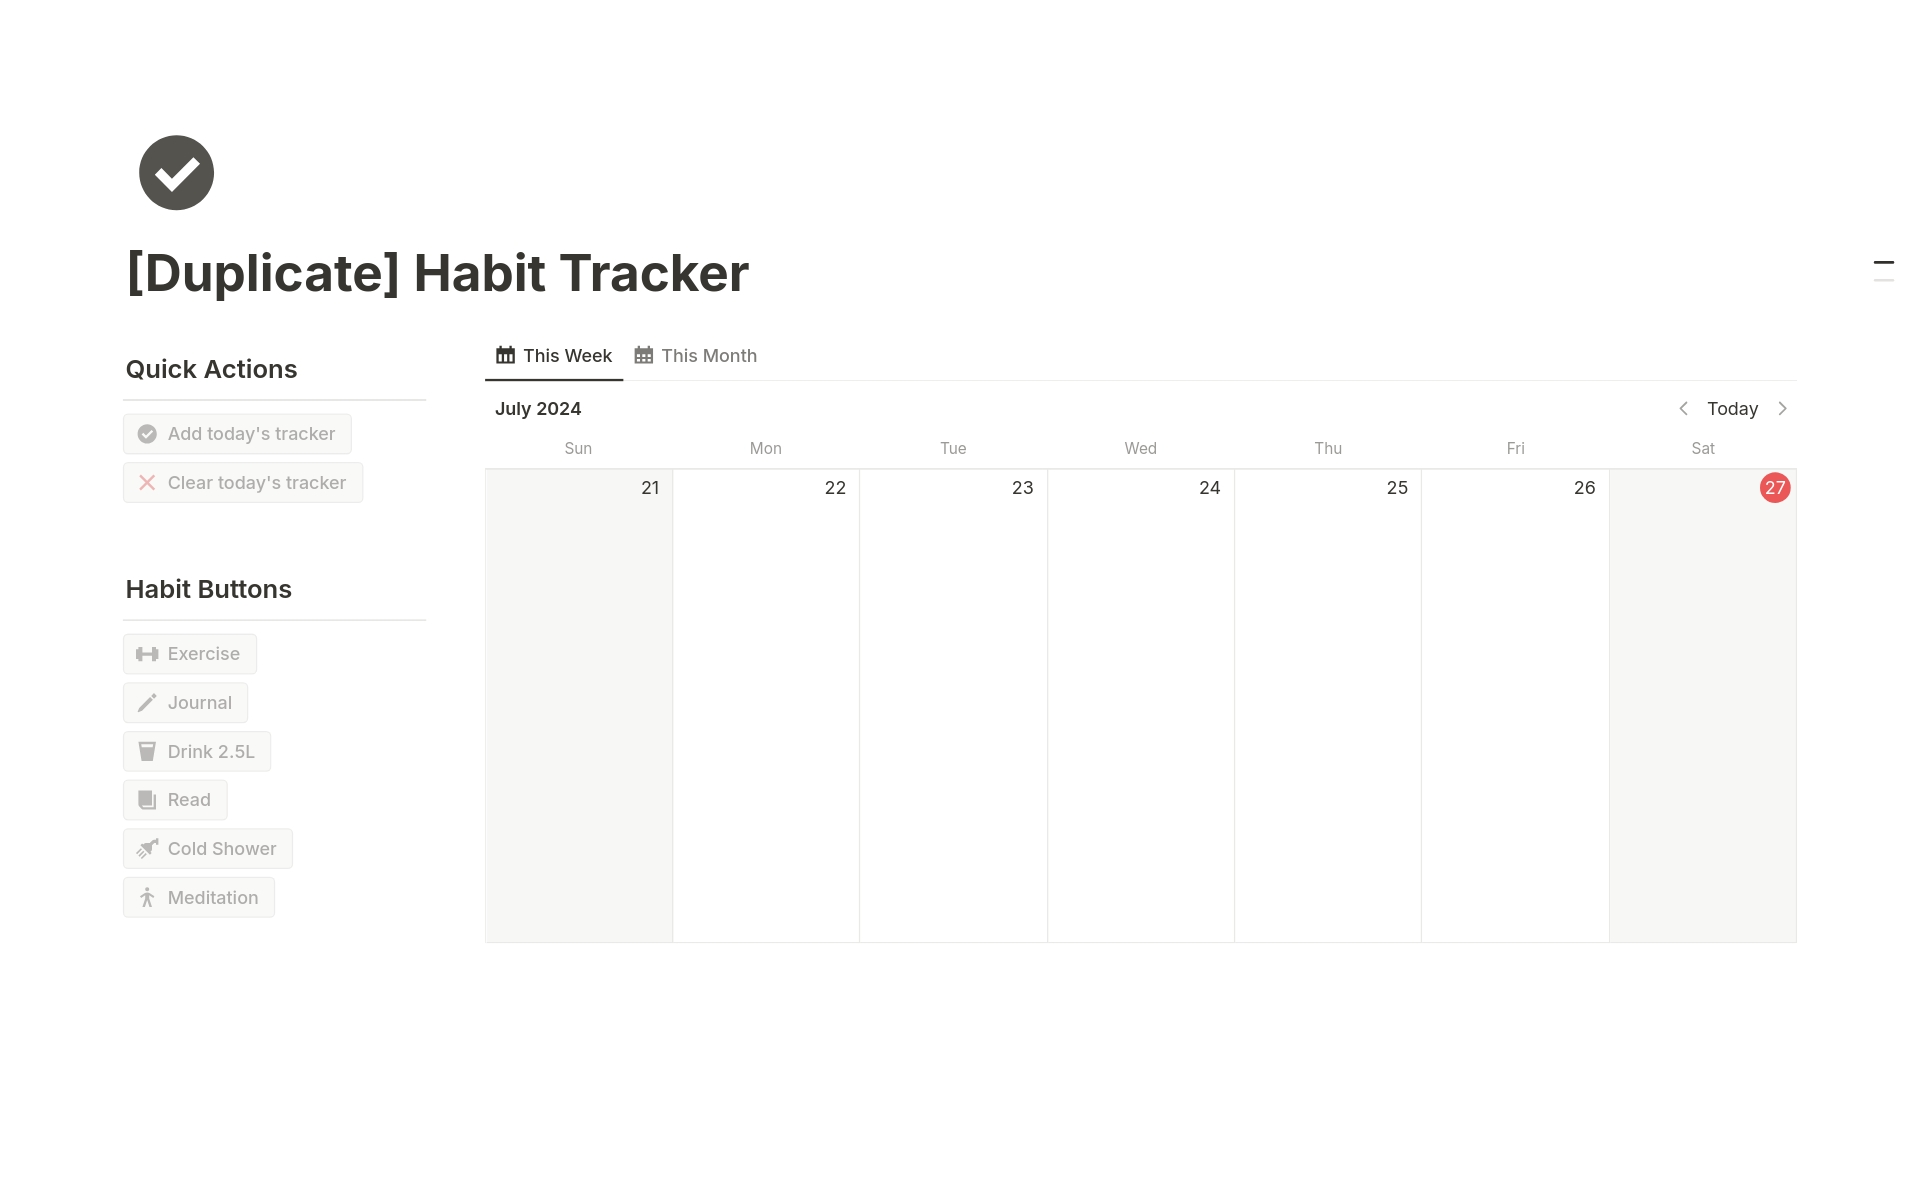 Uma prévia do modelo para Habit Tracker